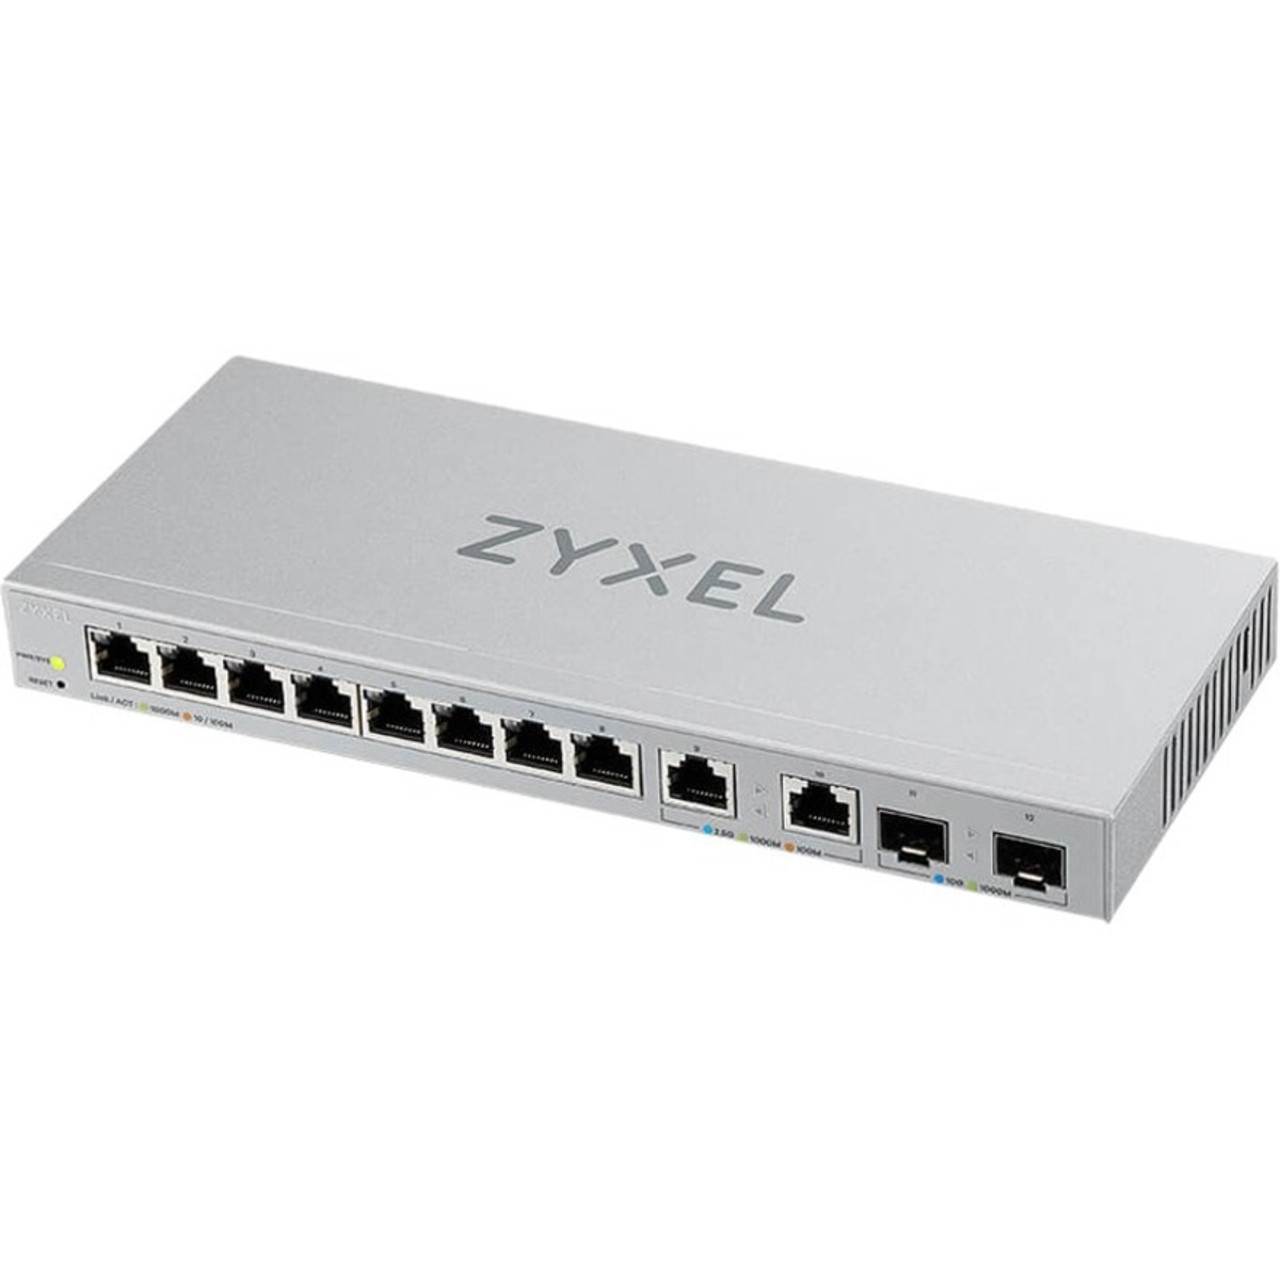 YXEL 12-Port Web-Managed Multi-Gigabit Switch